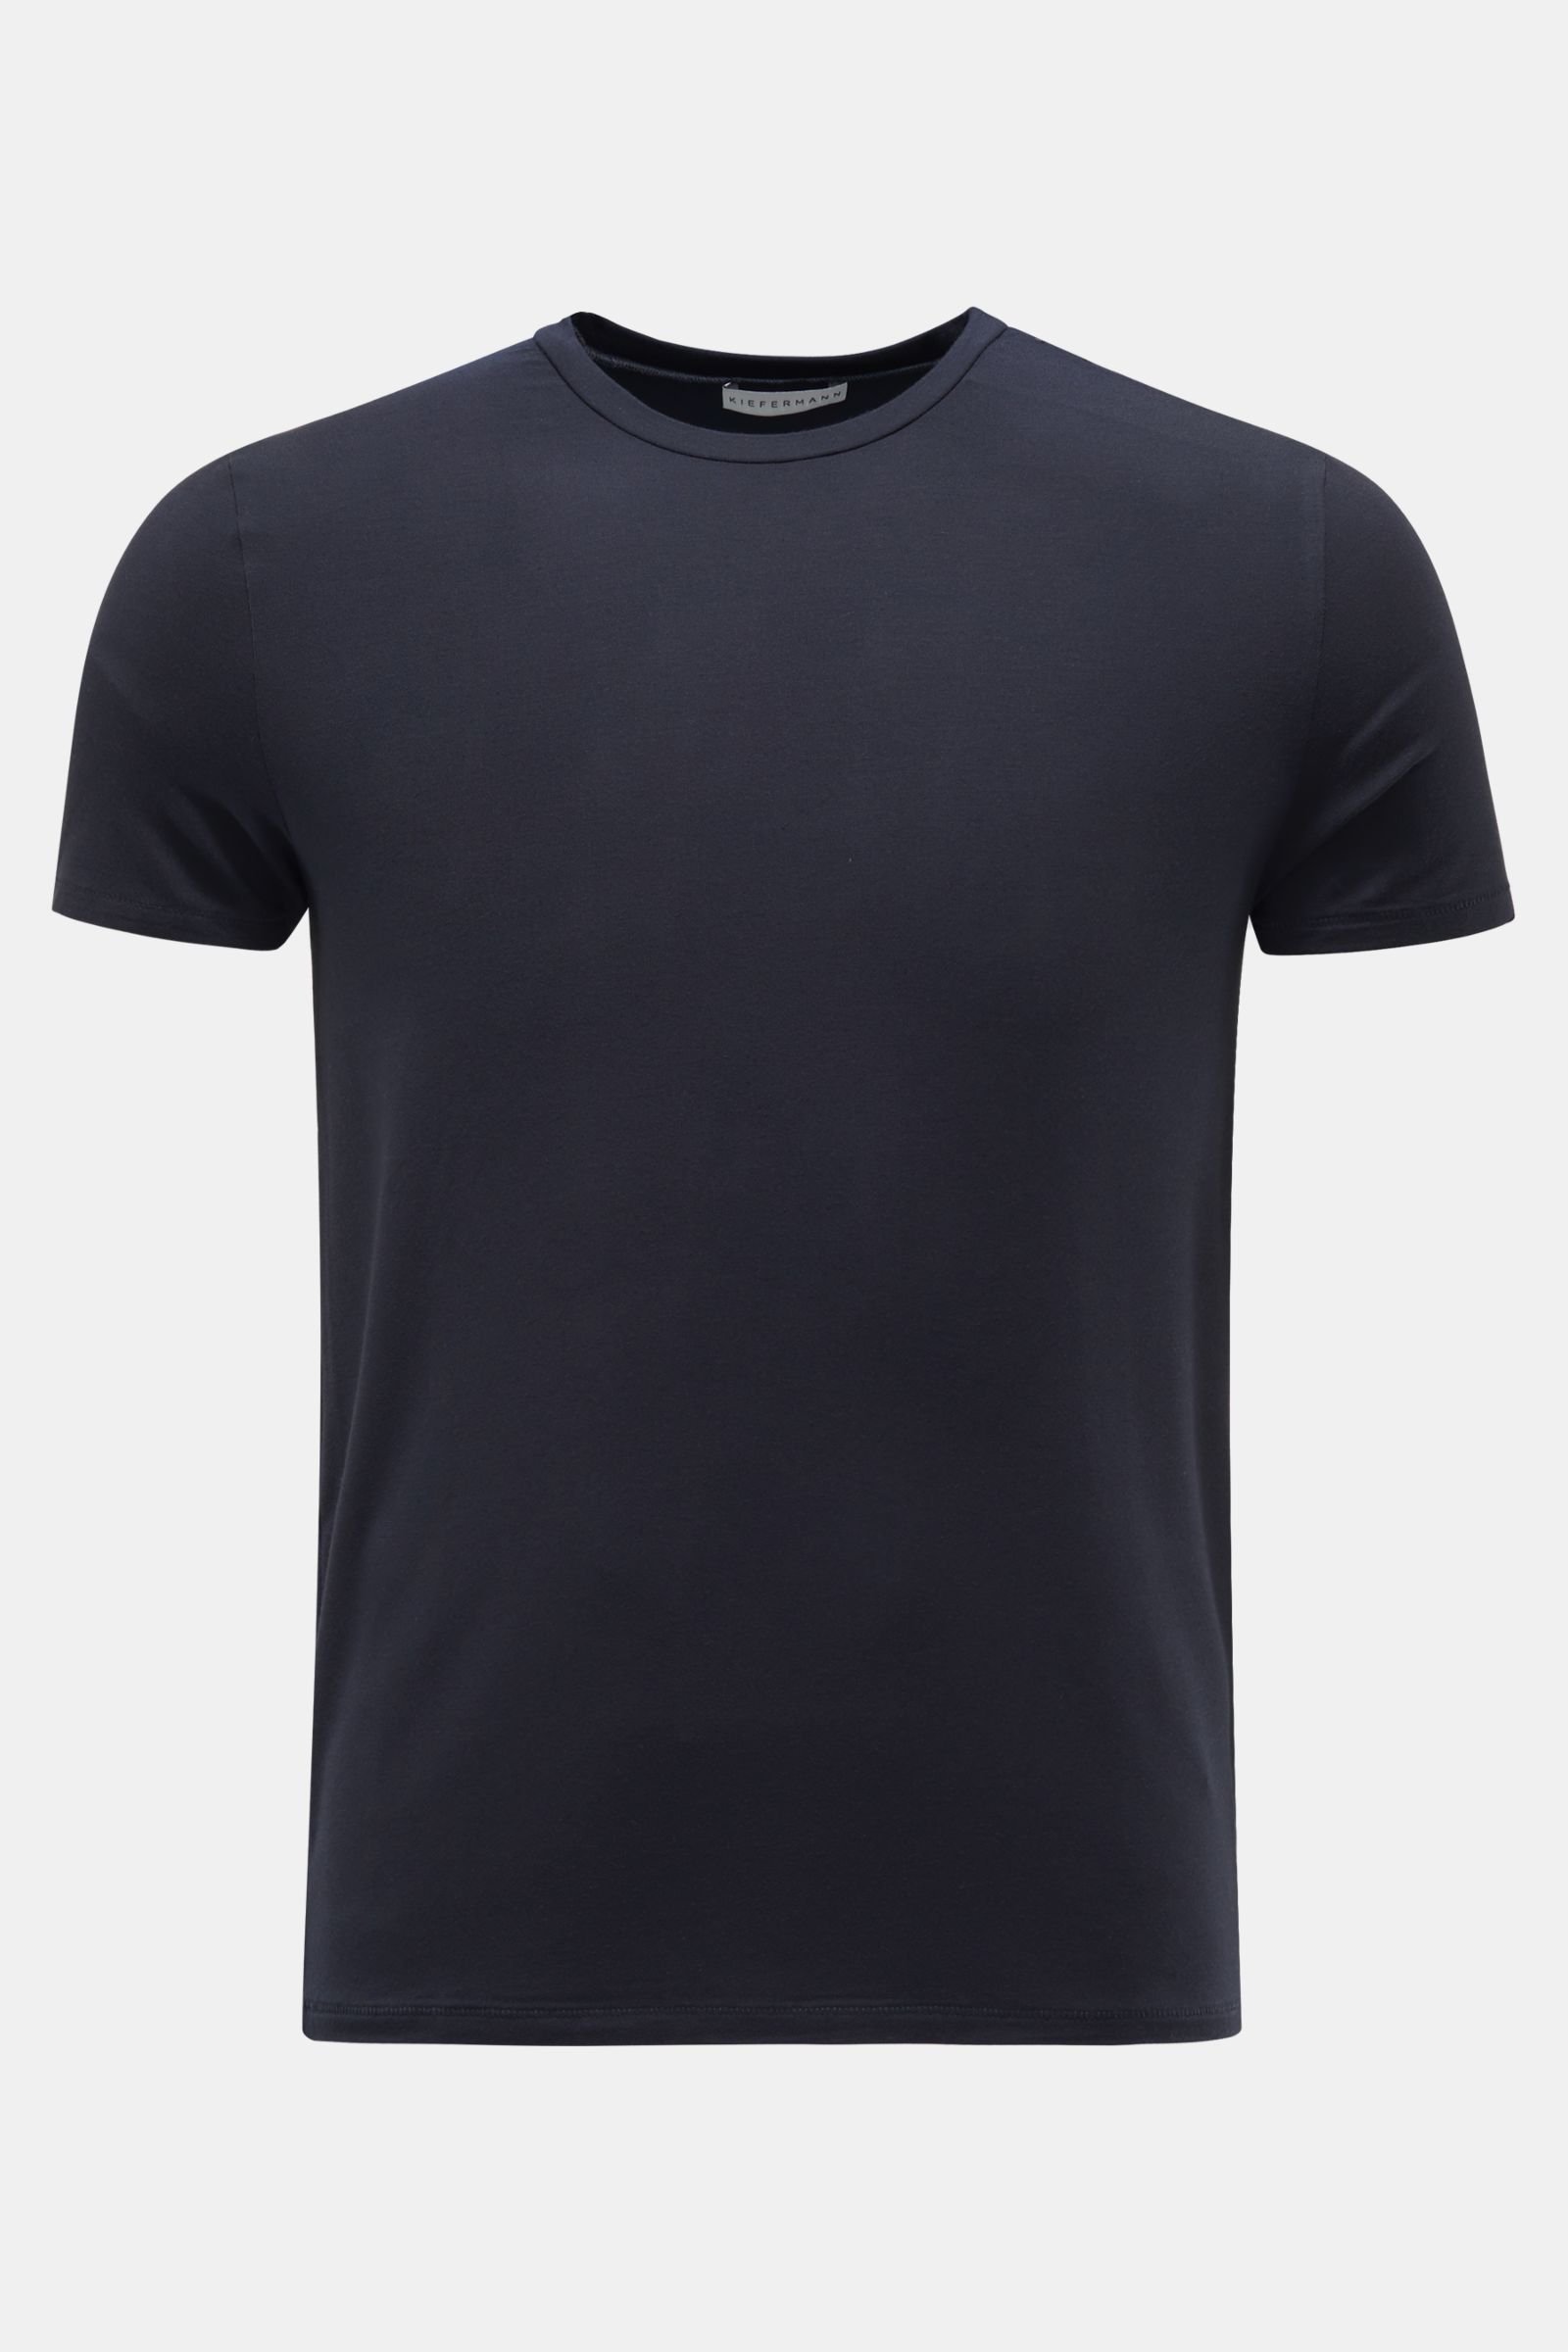 Crew neck T-shirt 'Damian' dark navy